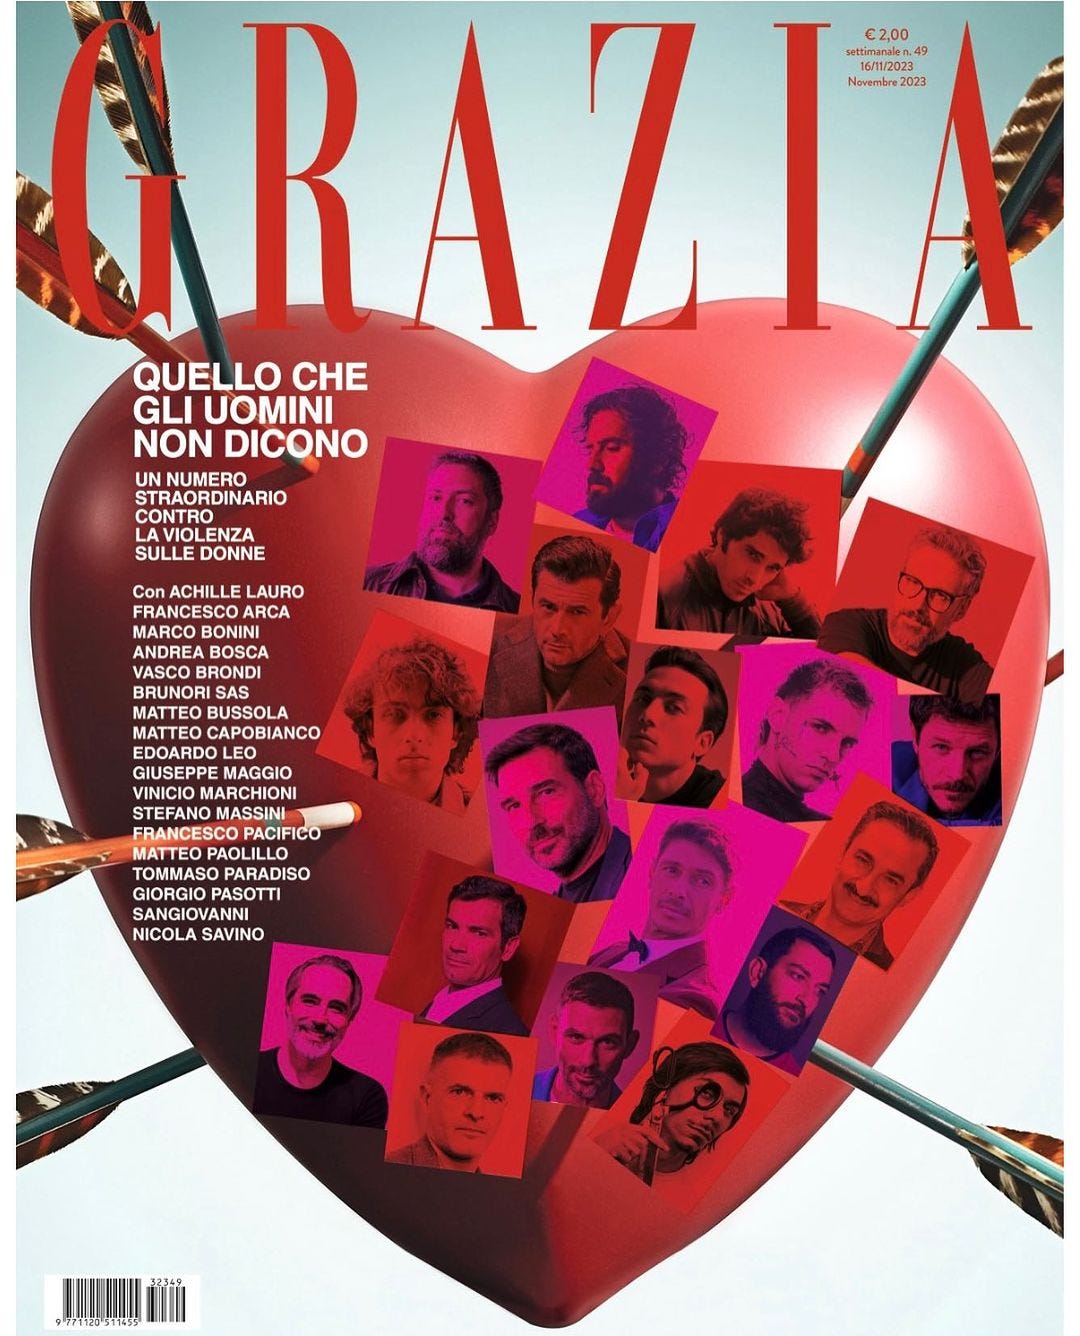 La copertina del numero di Grazia dedicato alla giornata contro la violenza sulle donne